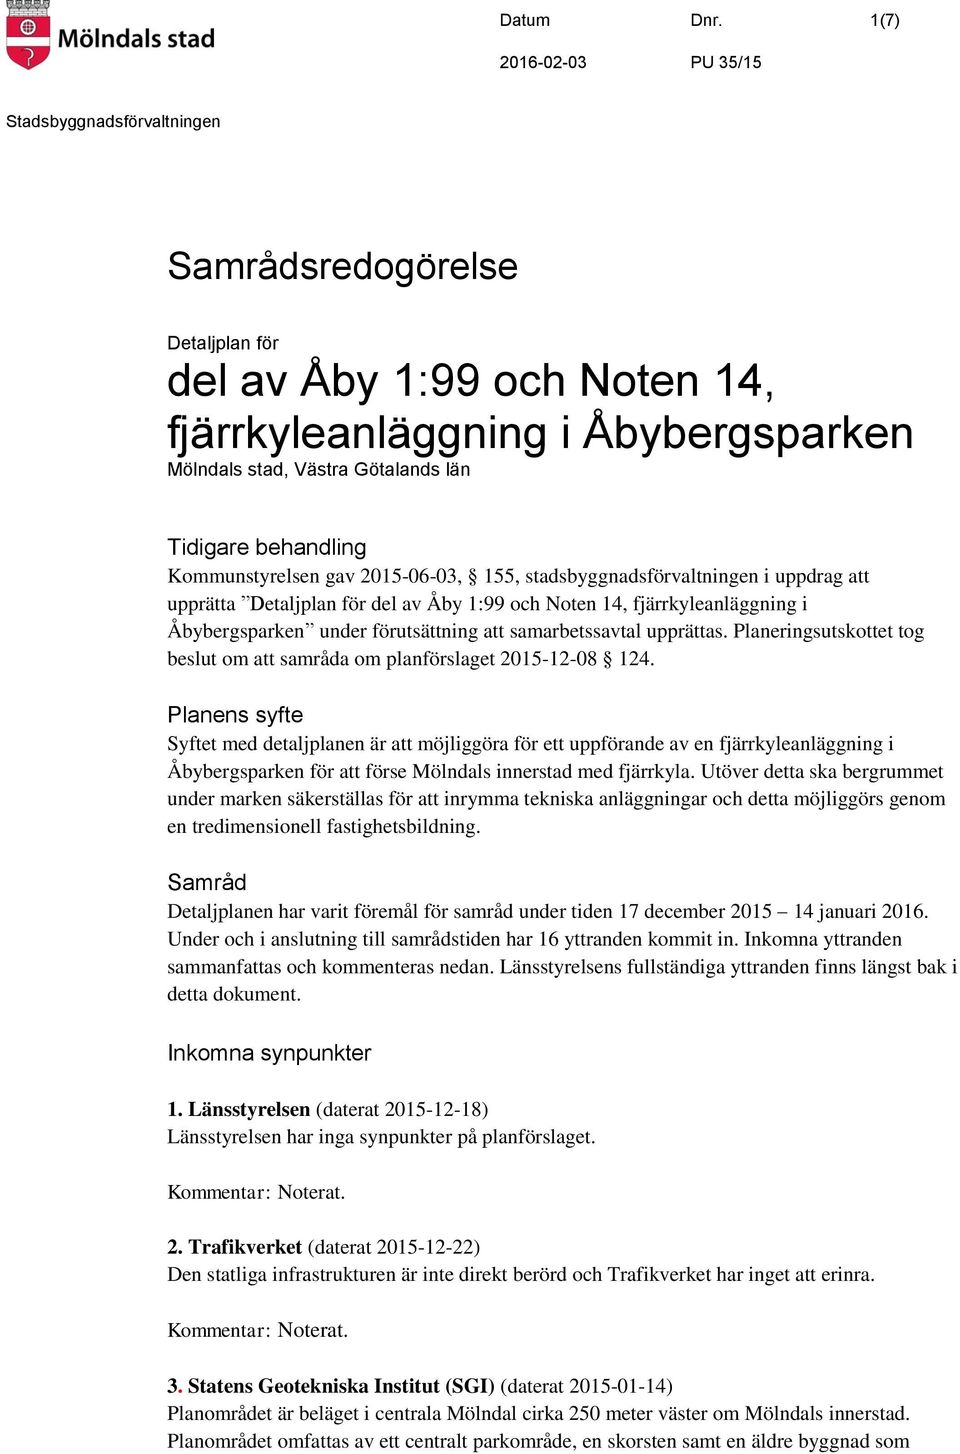 stadsbyggnadsförvaltningen i uppdrag att upprätta Detaljplan för del av Åby 1:99 och Noten 14, fjärrkyleanläggning i Åbybergsparken under förutsättning att samarbetssavtal upprättas.